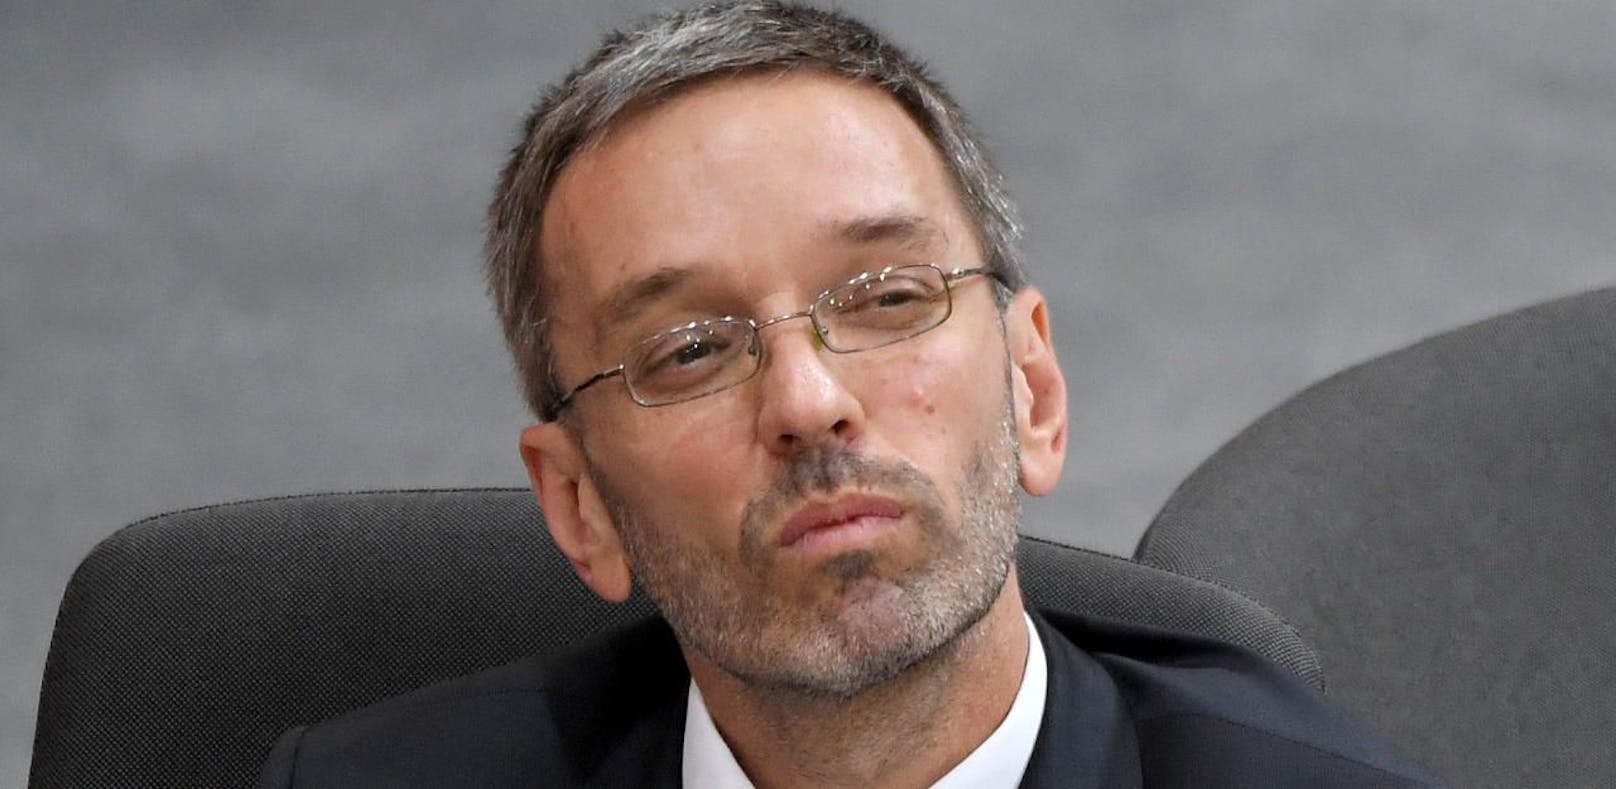 Innenminister Herbert Kickl (FPÖ) sucht Chefs für seine neue Abteilung.